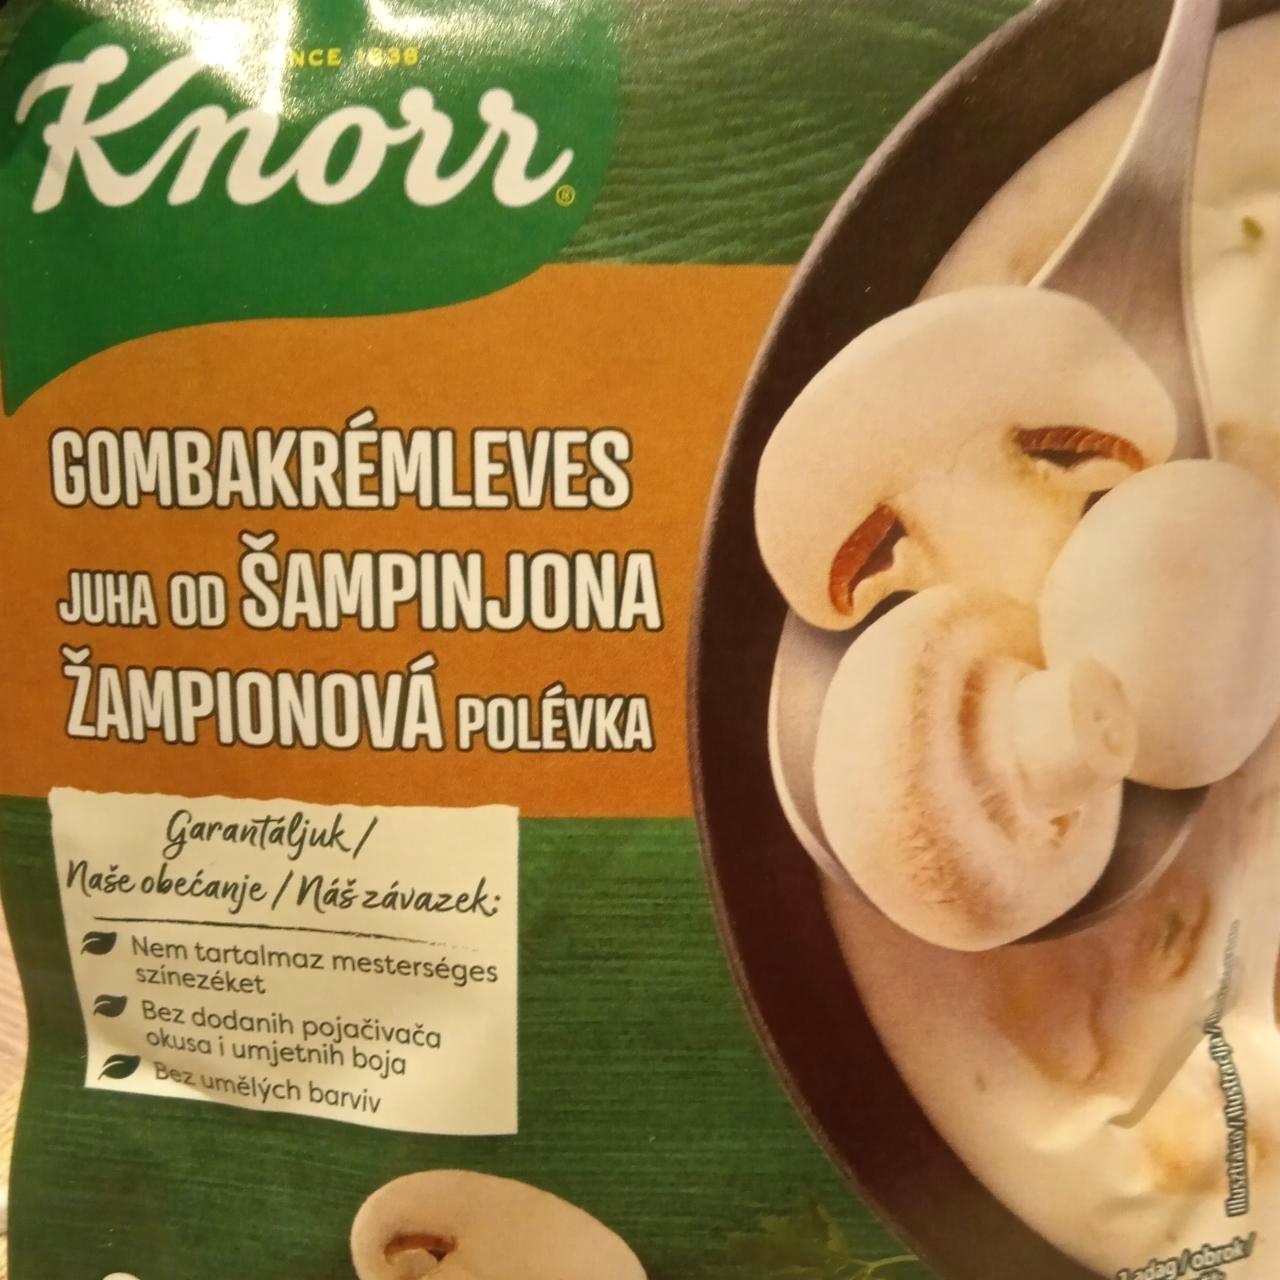 Képek - Gombakrémleves Knorr